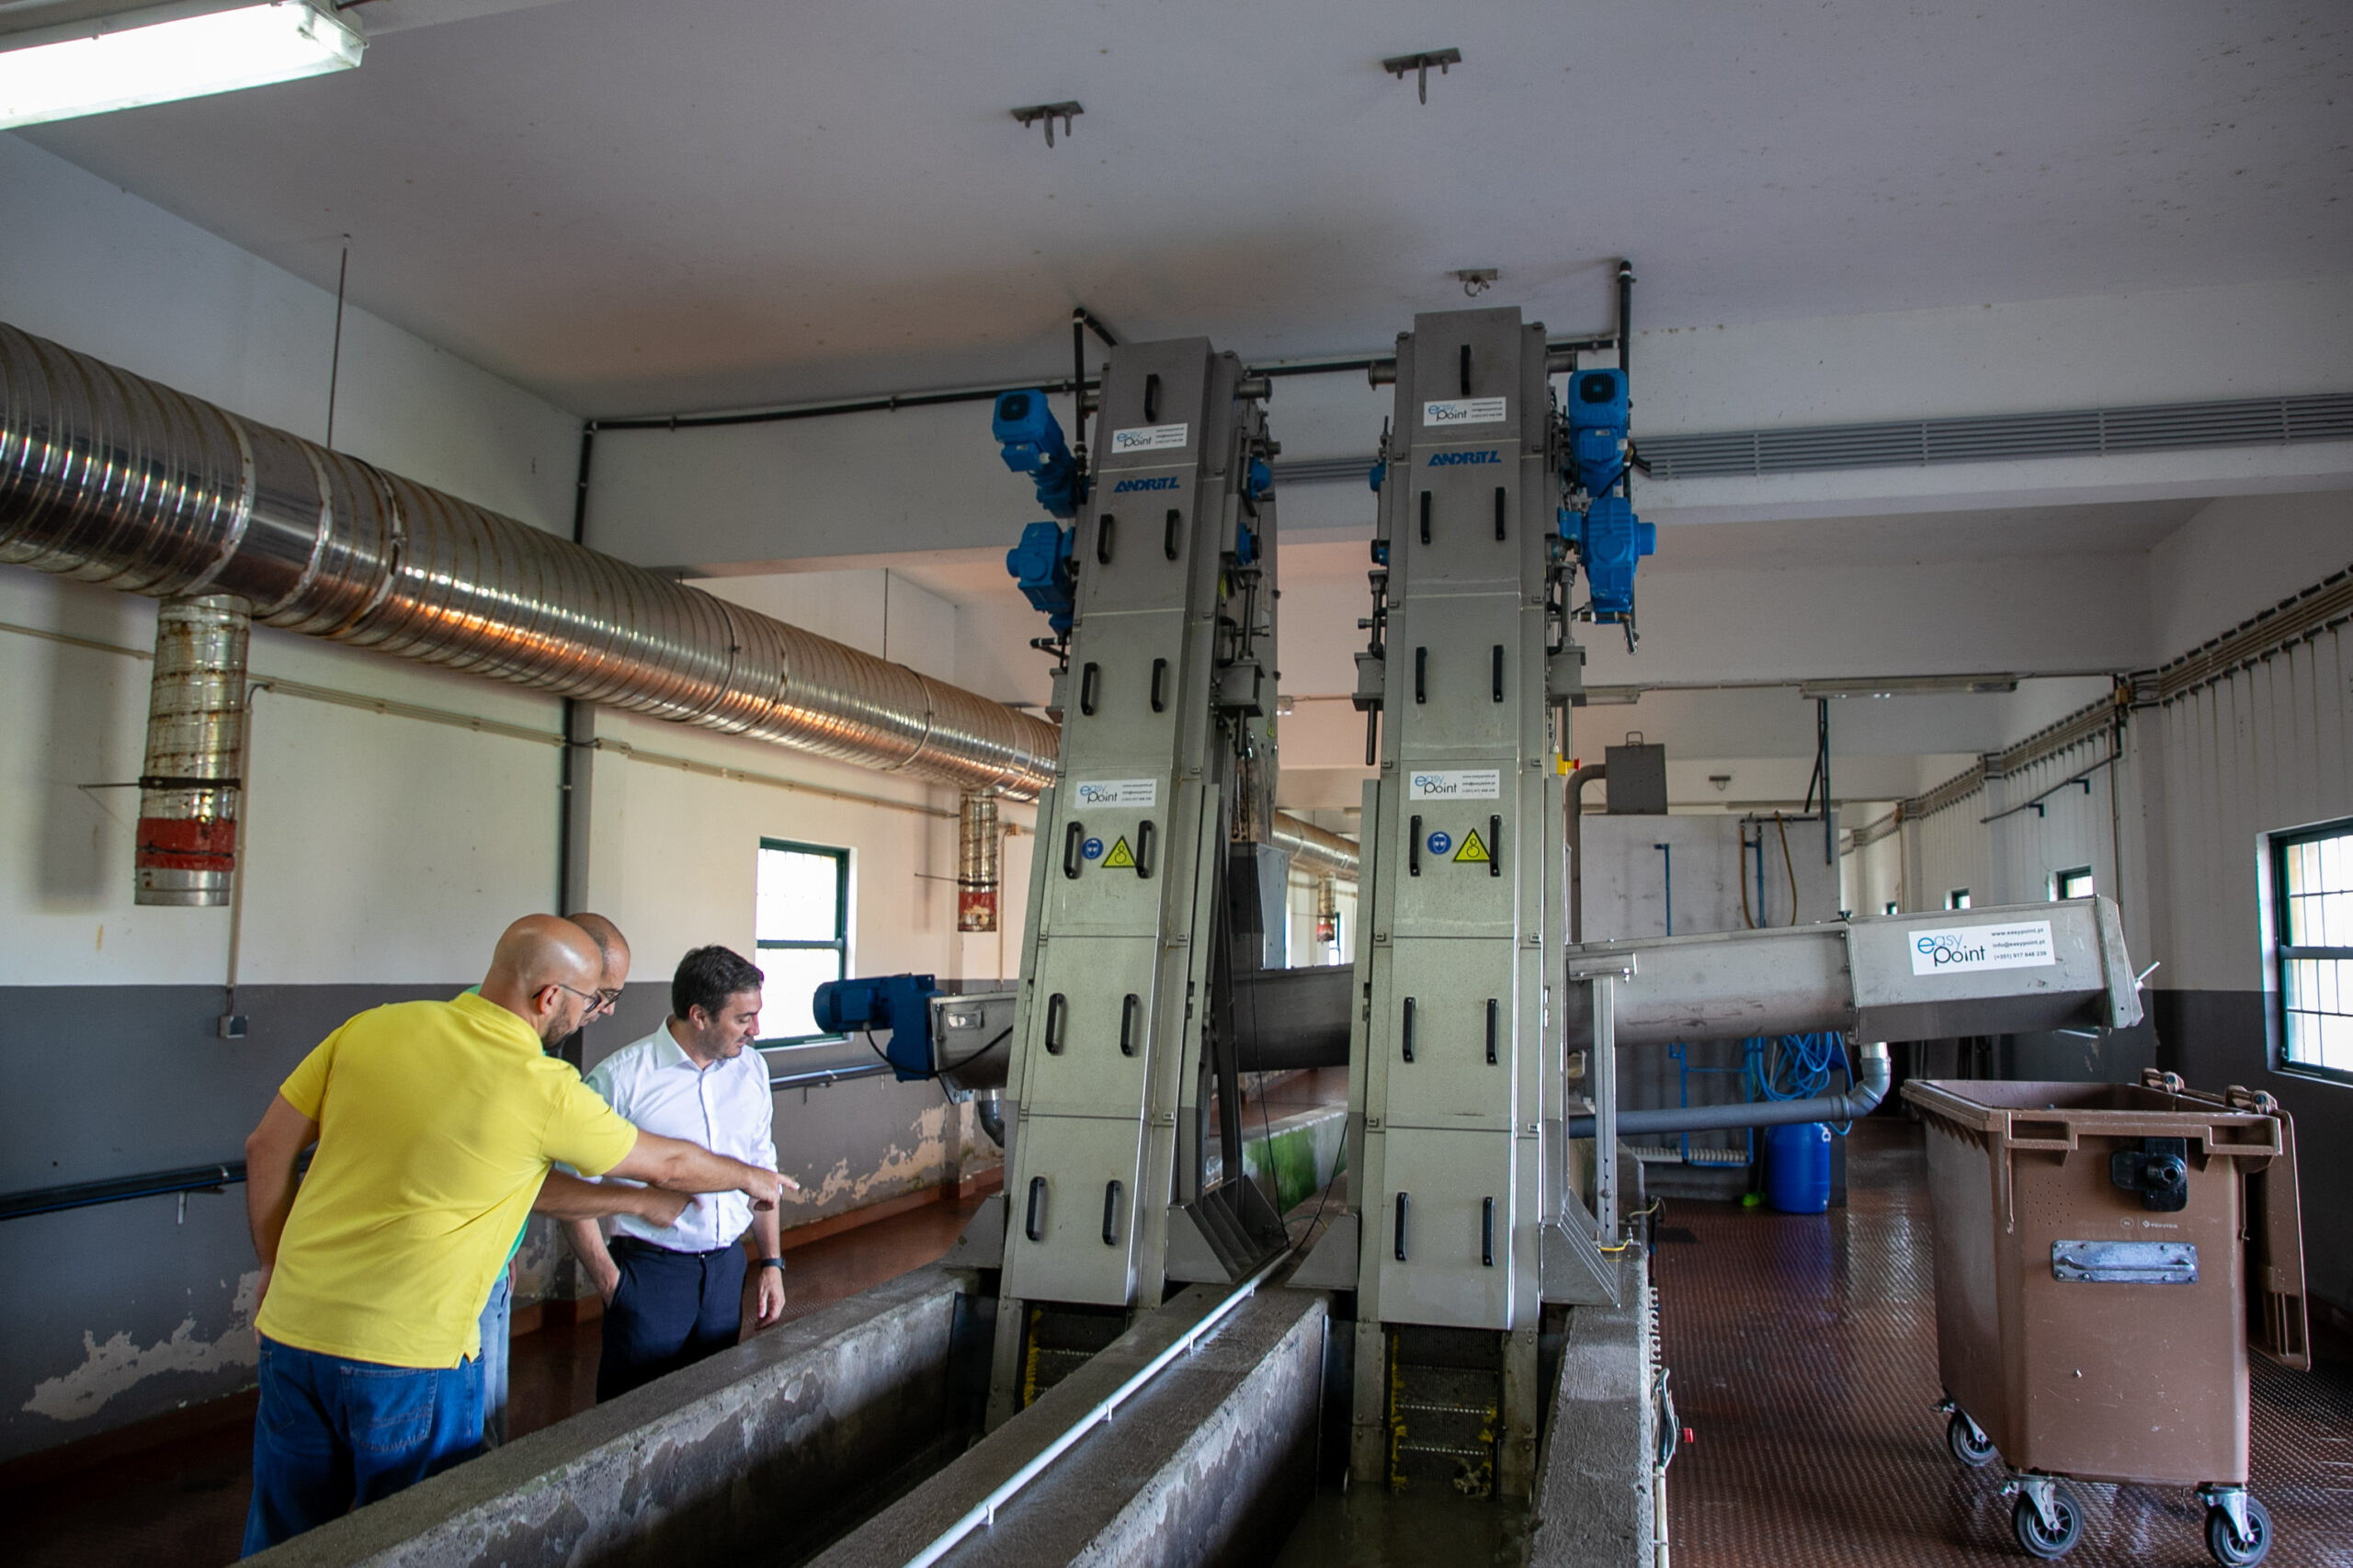 Município de Angra do Heroísmo promove melhoria de qualidade do tratamento das águas residuais.